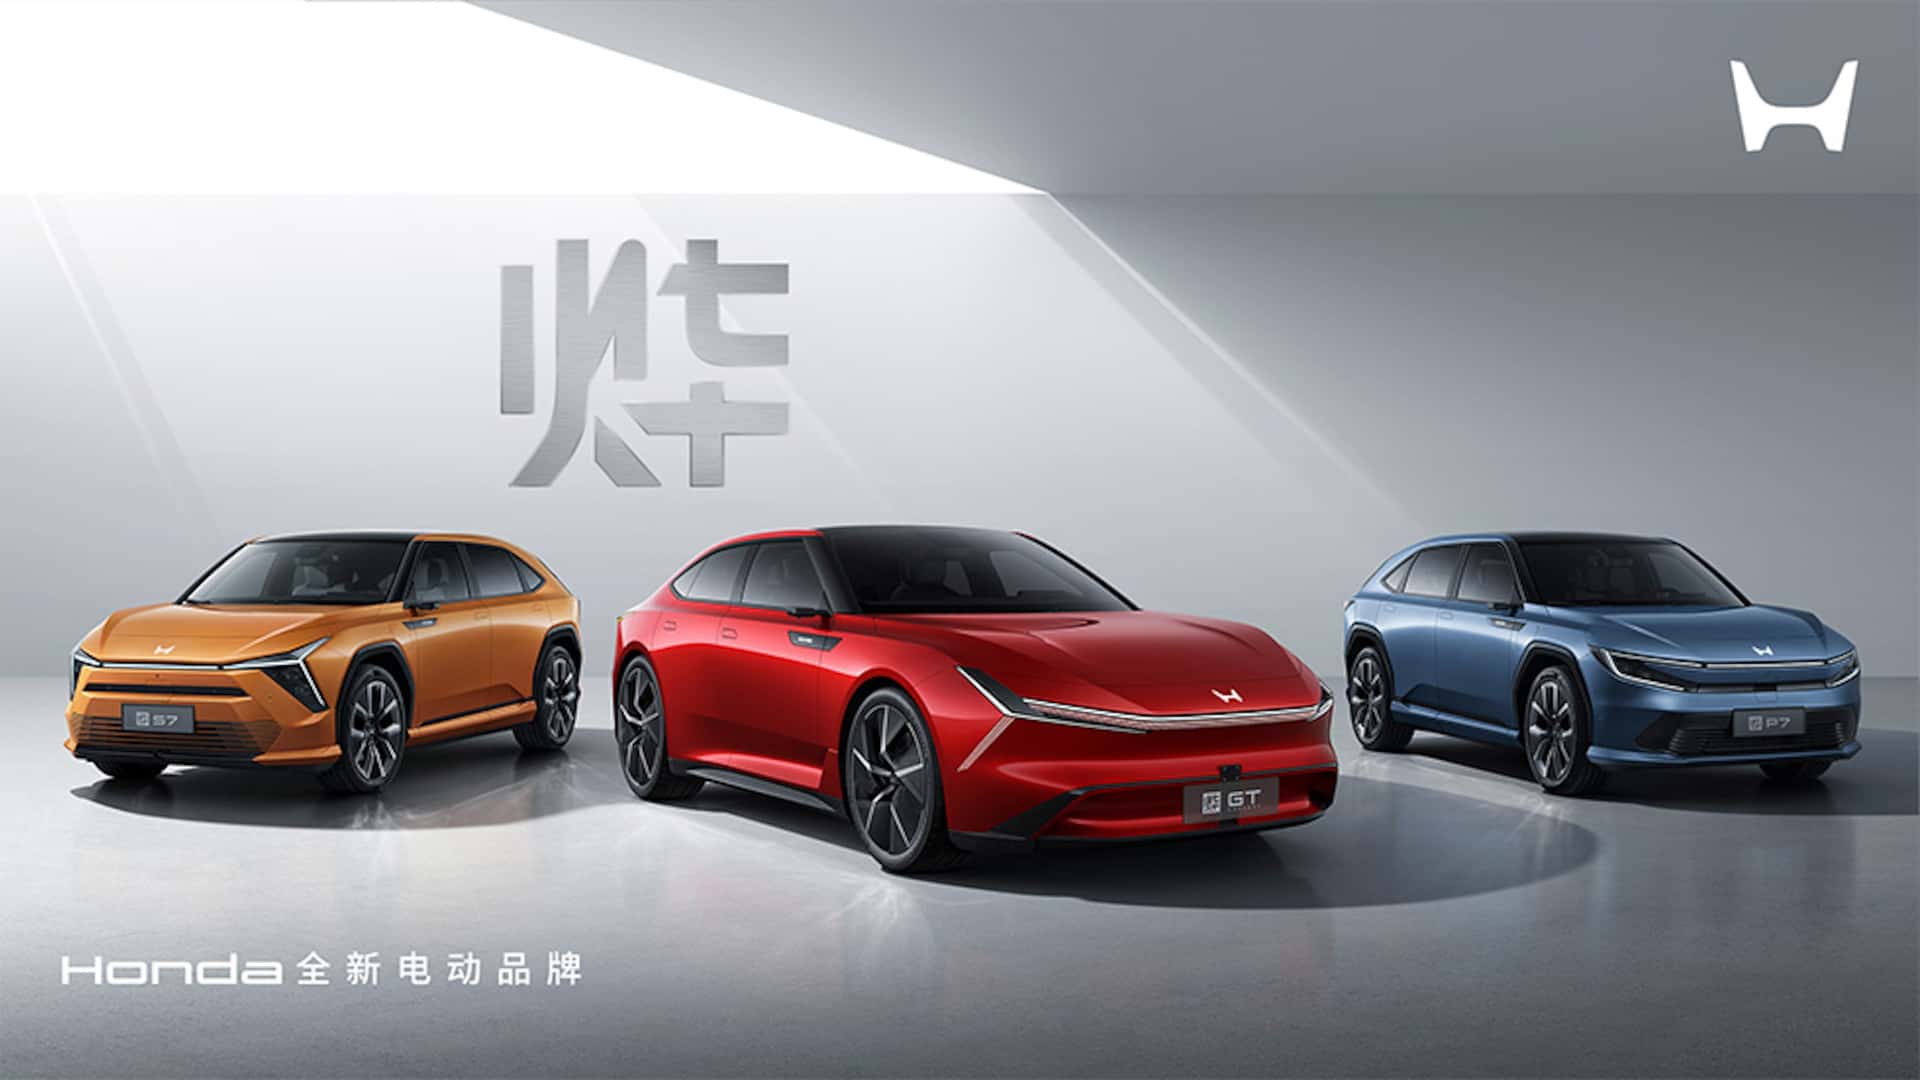 Bộ 3 sản phẩm gồm Dongfeng Honda S7, GAC Honda P7 và concept Ye GT